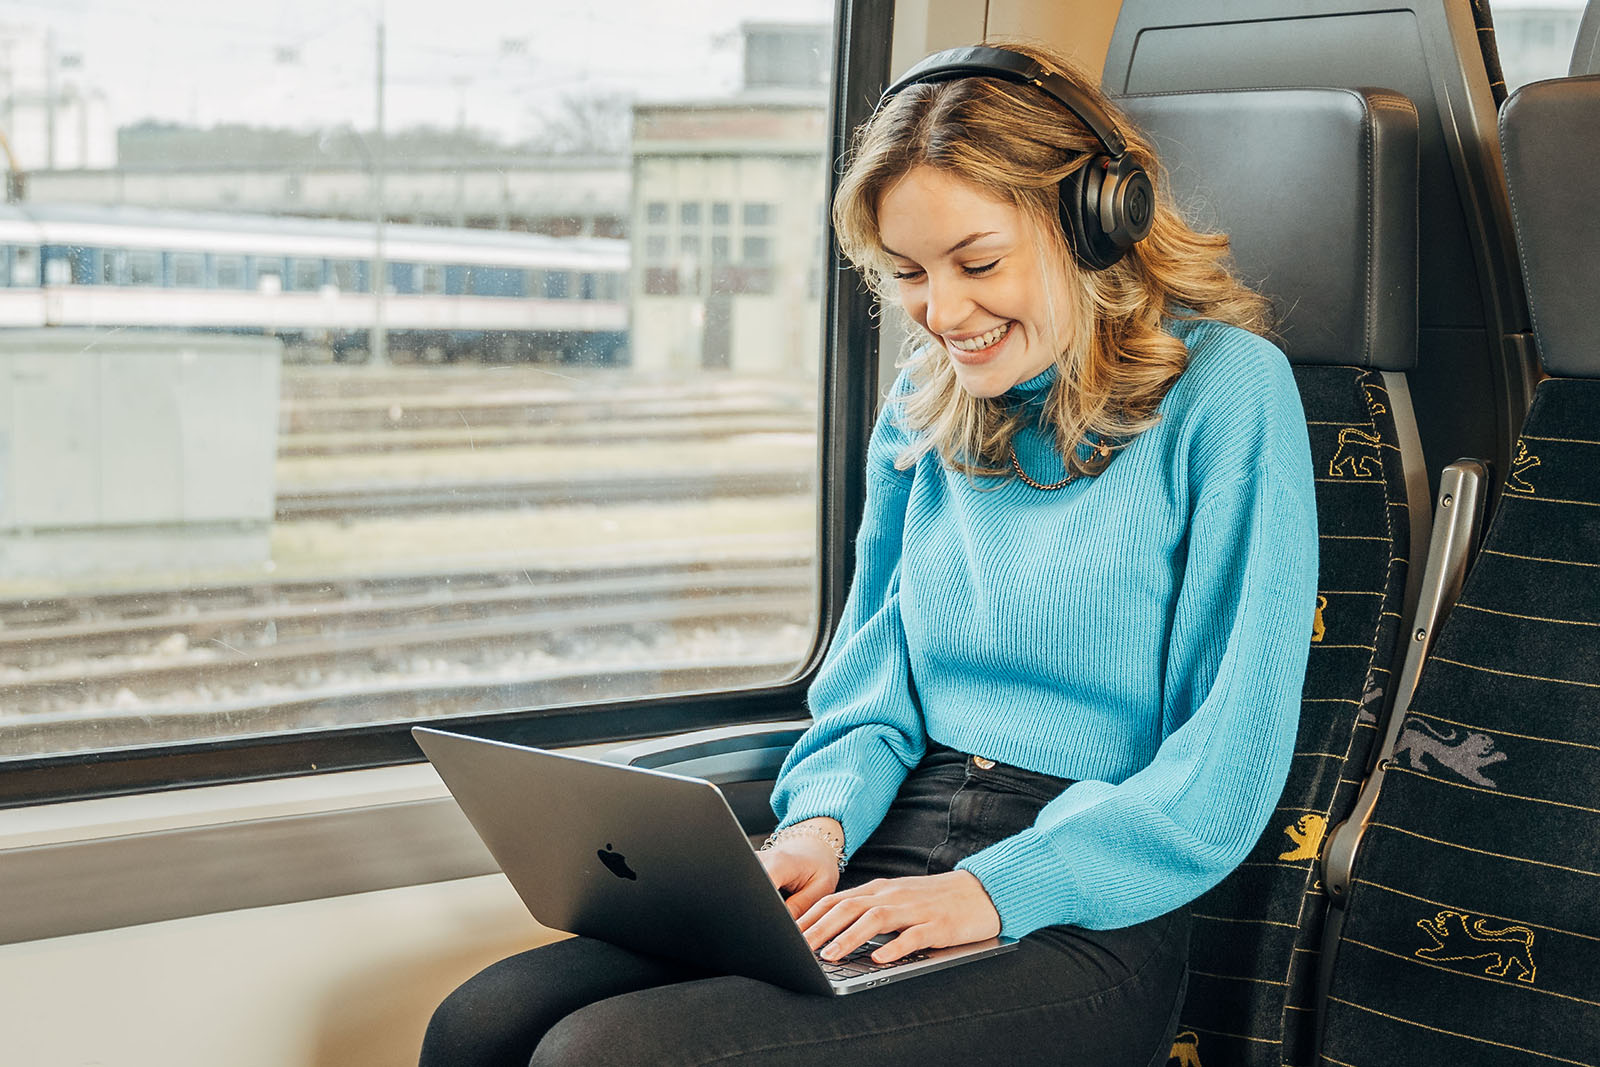 Junge Frau mit Laptop im Zug